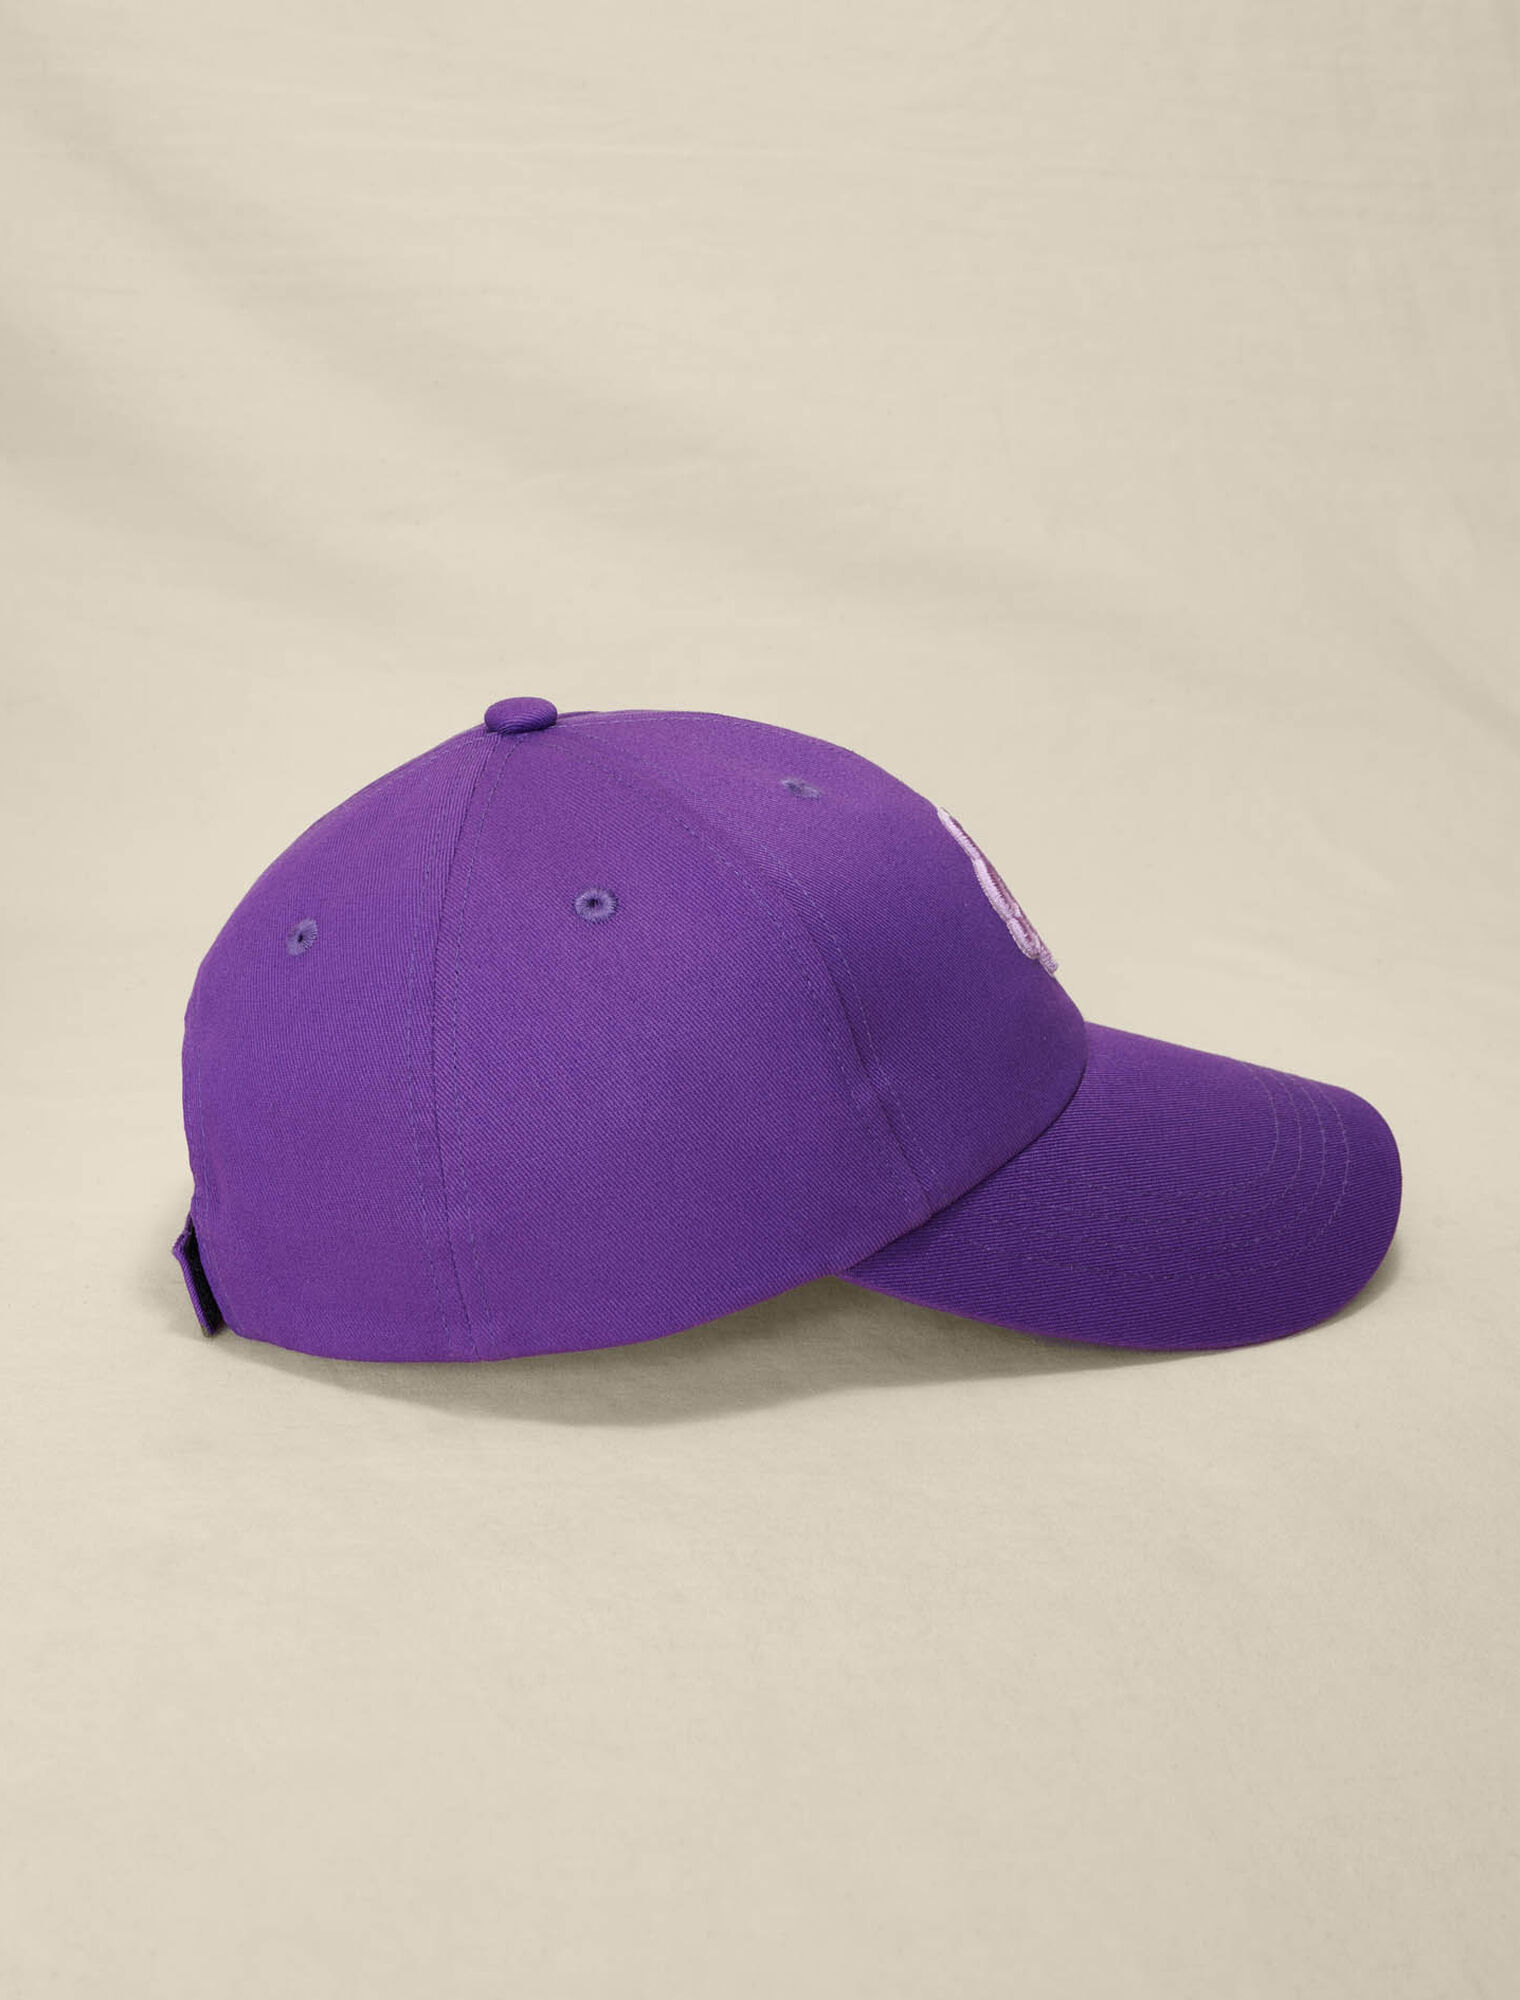 Cotton cap with Clover logo